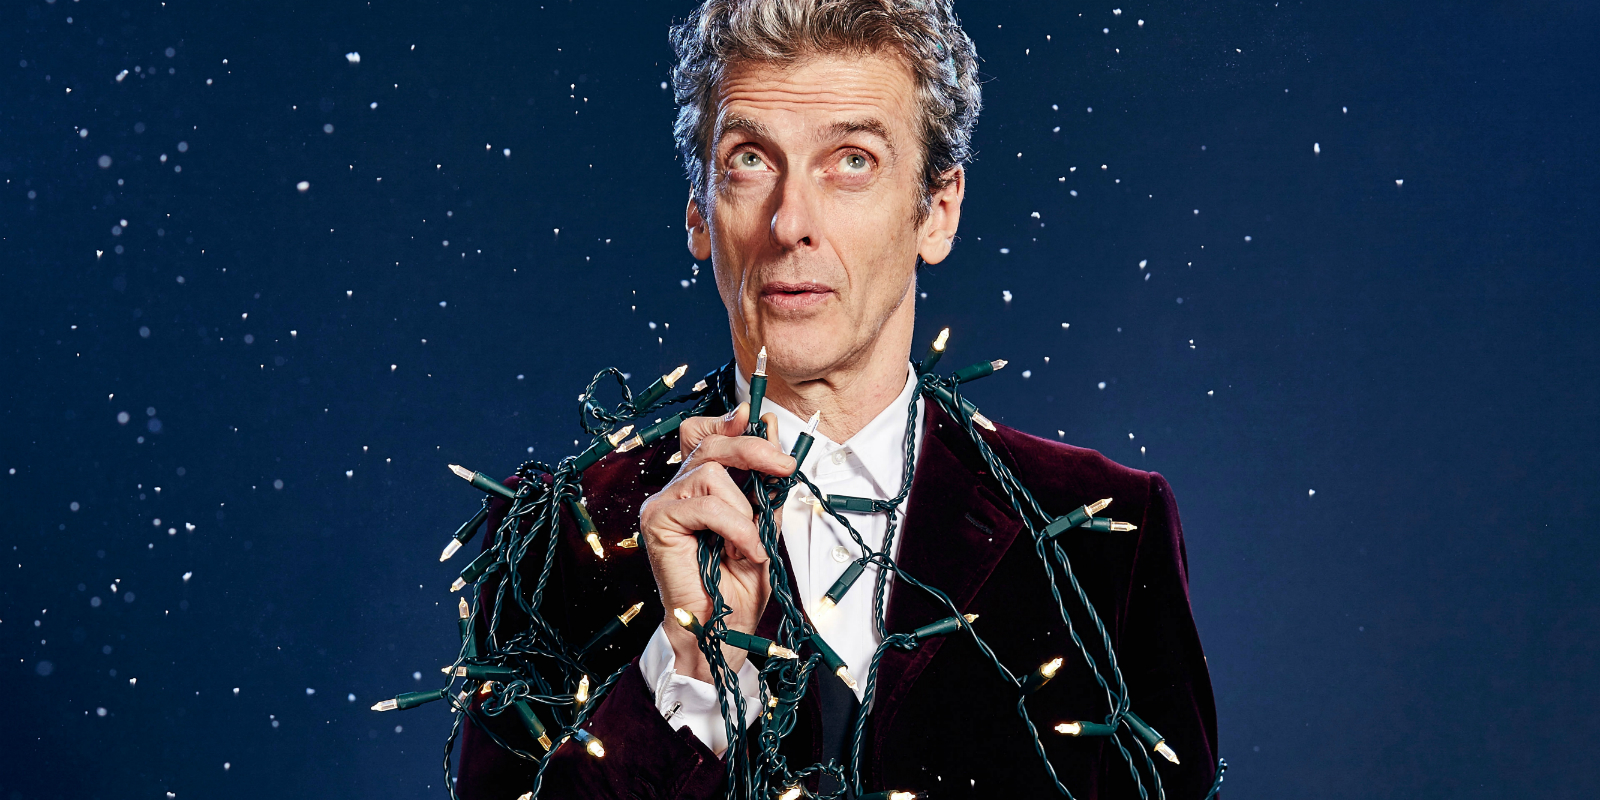 Doctor Who Christmas special : La série s'inspire de l'univers DC Comics dans un nouvel extrait !